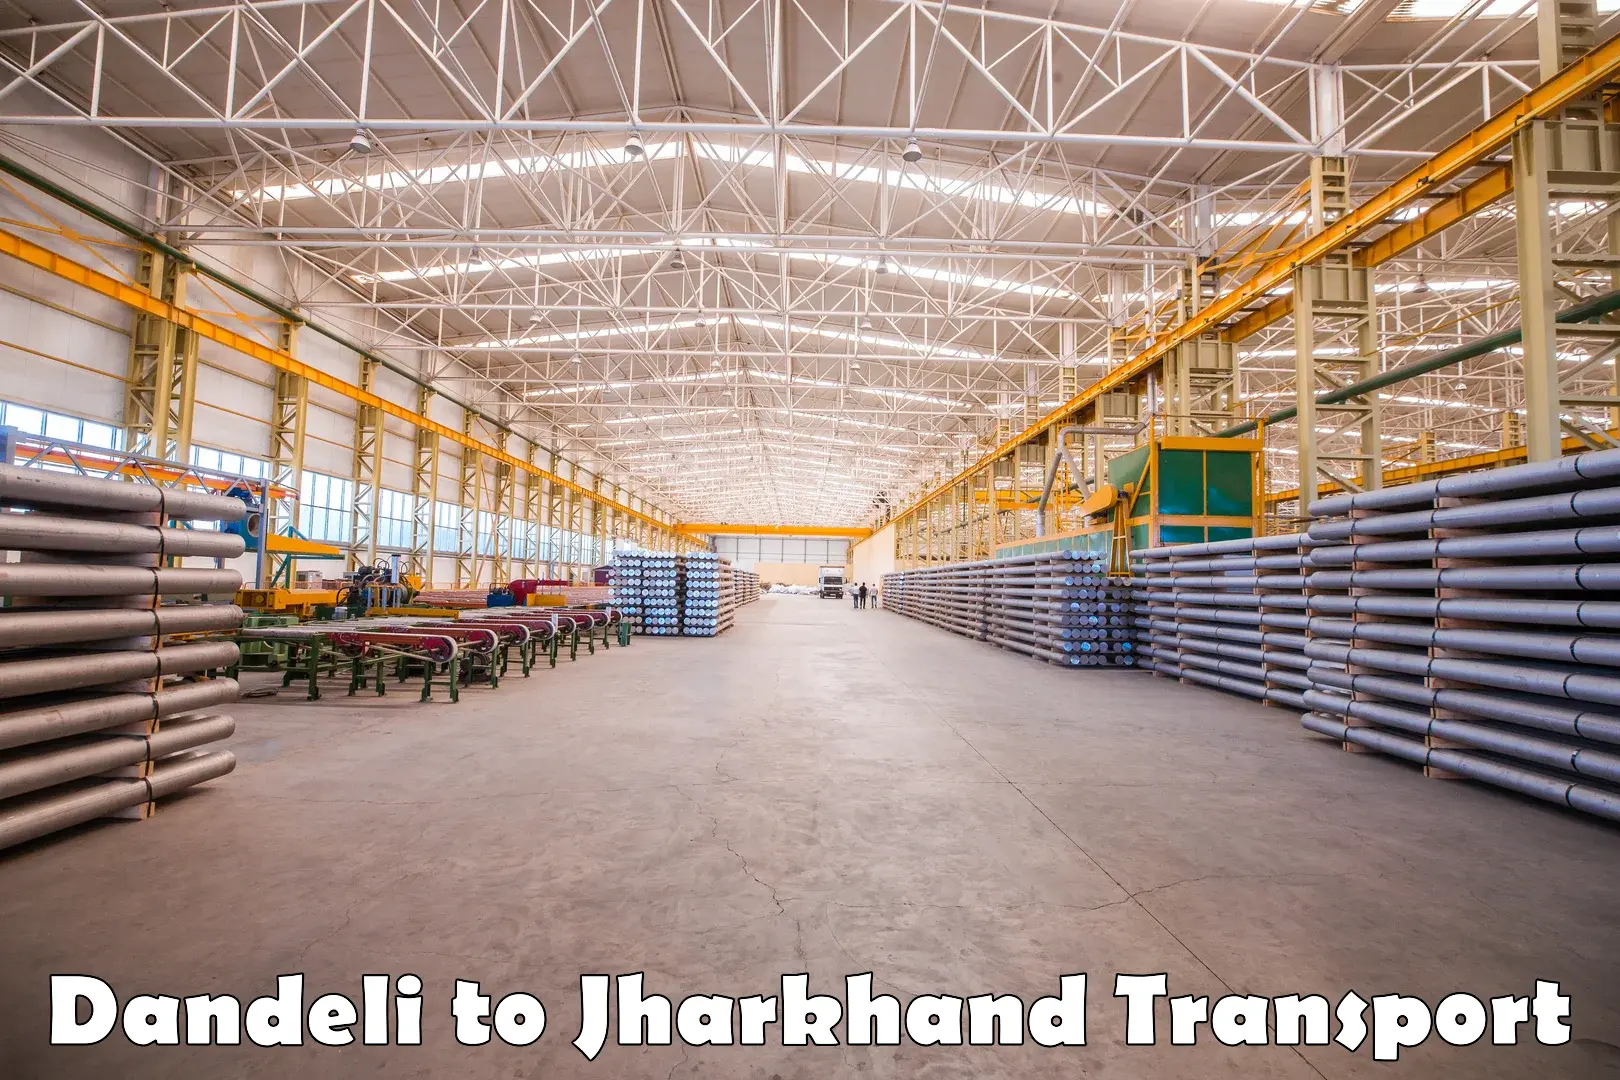 Truck transport companies in India in Dandeli to Kedla